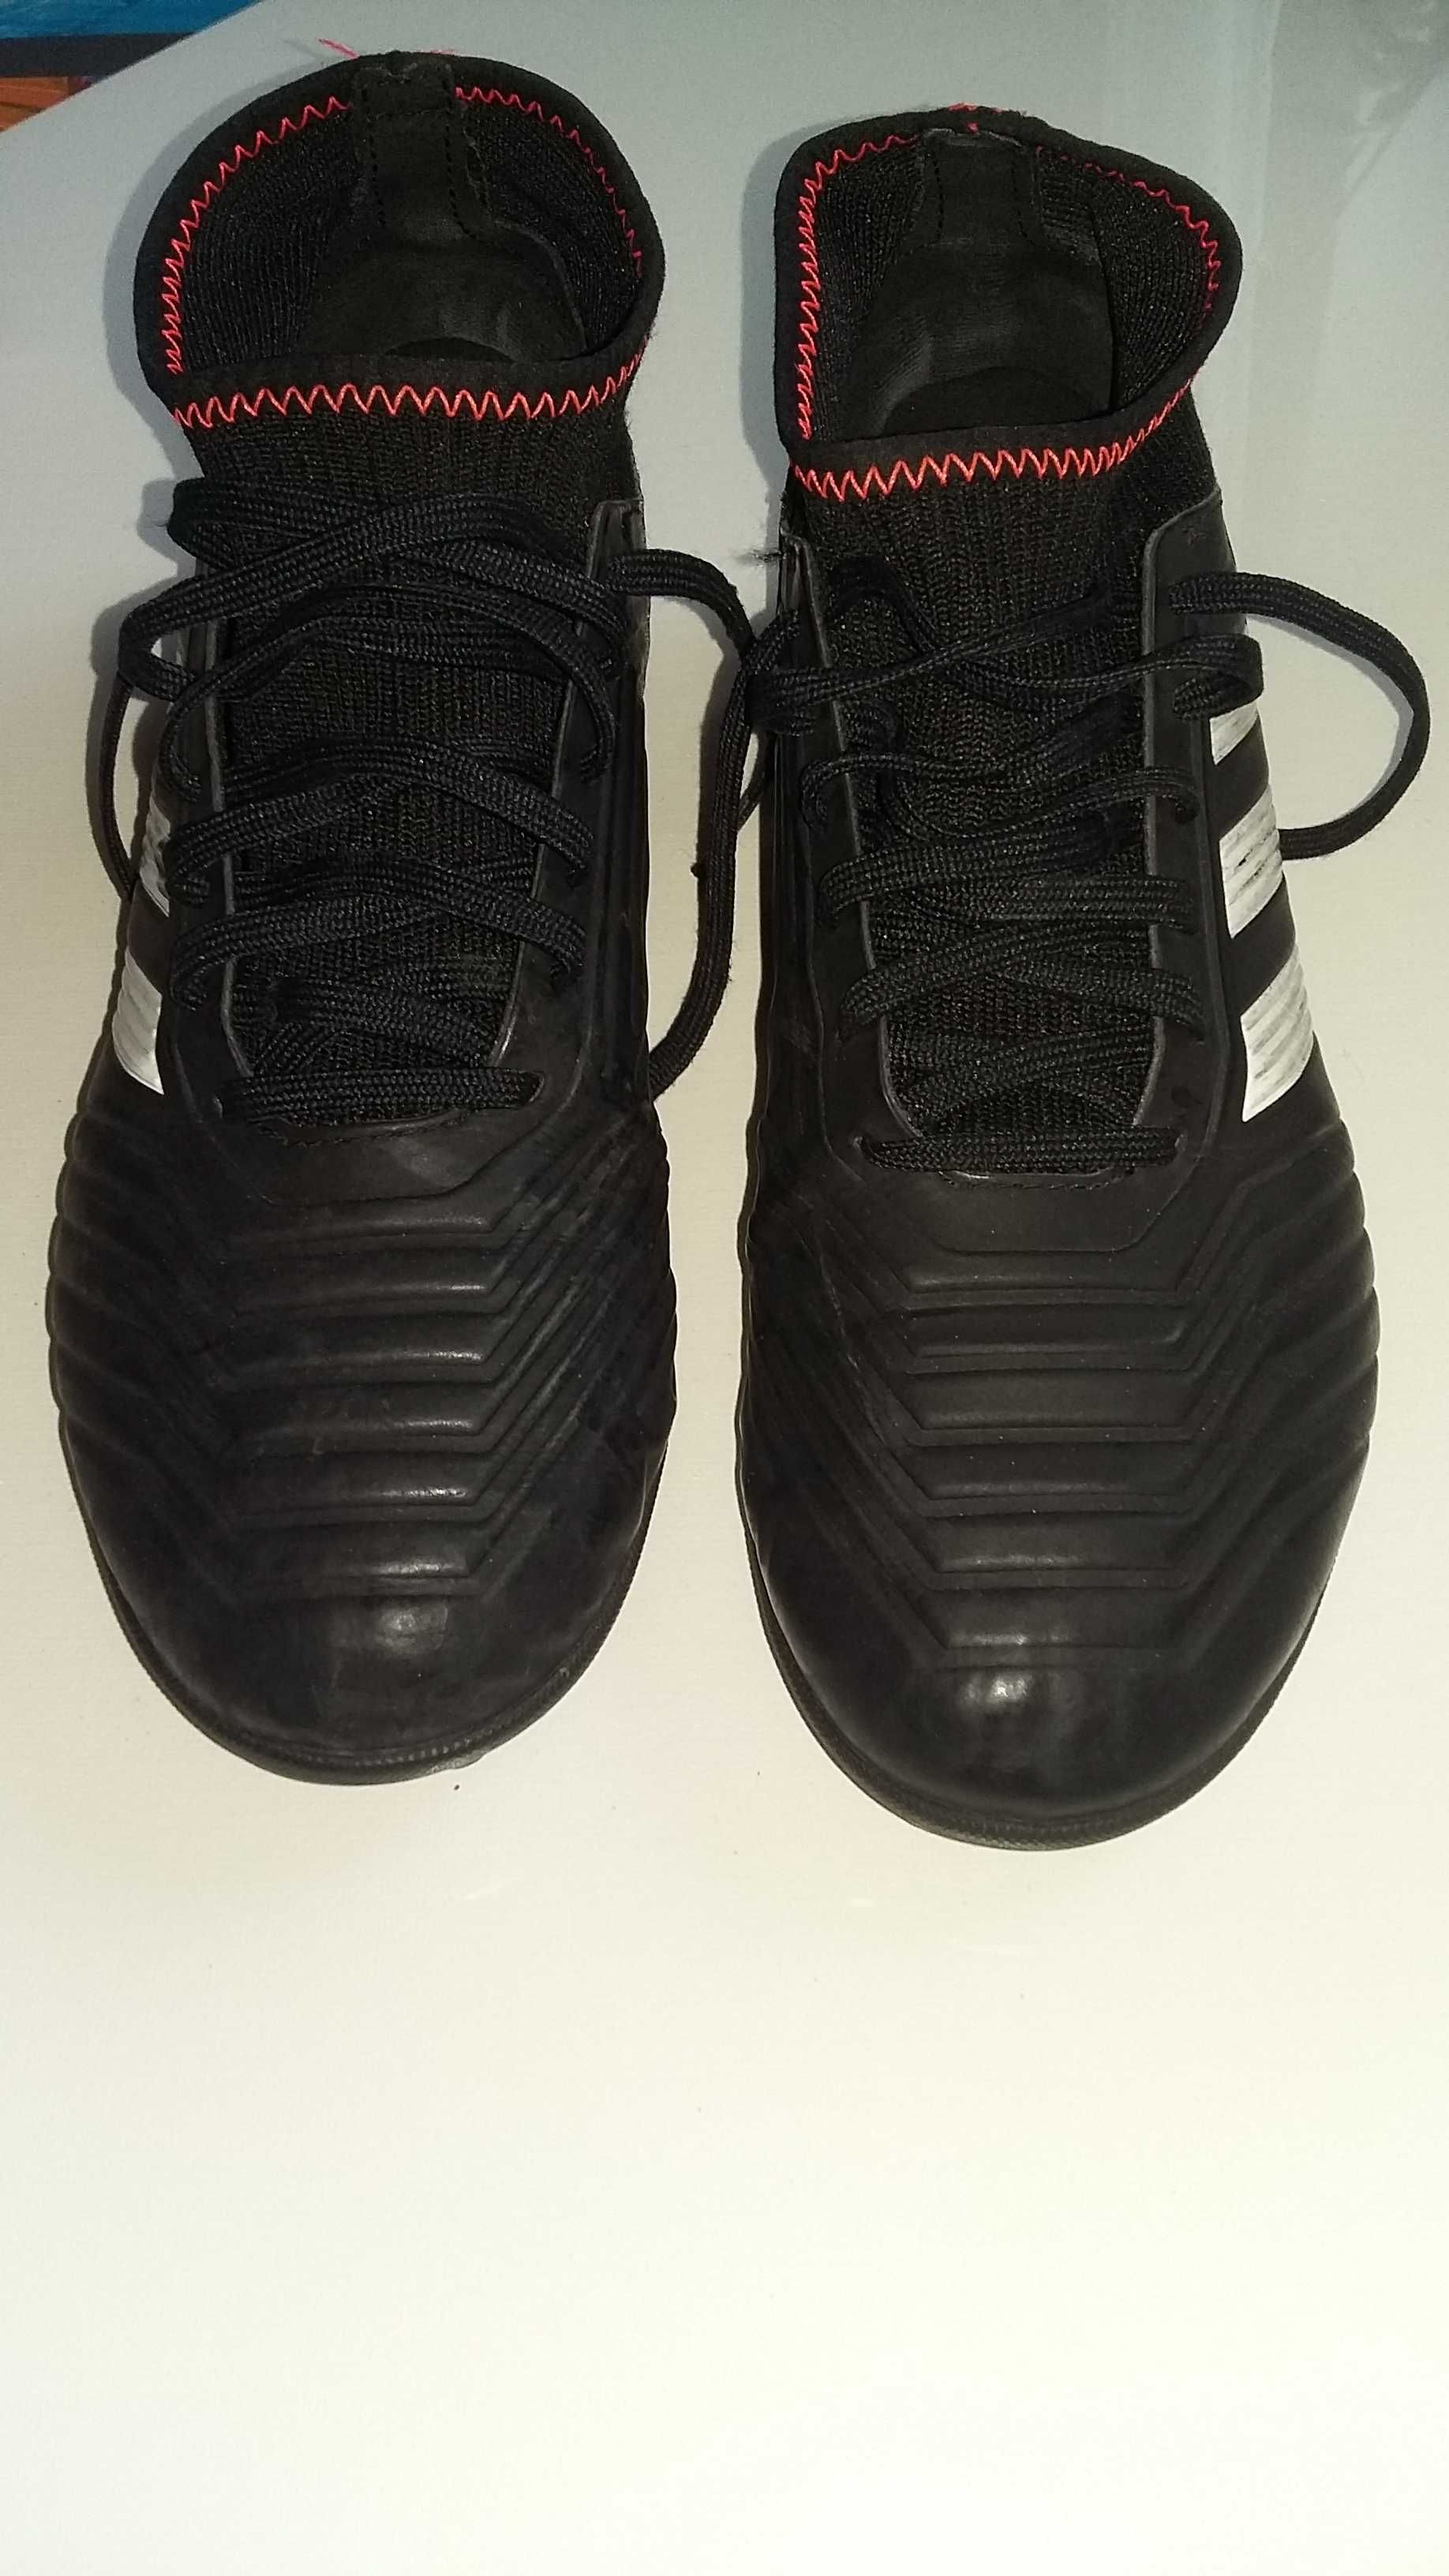 buty do piłki nożnej, turfy, Adidas Predator EU 38 2/3,